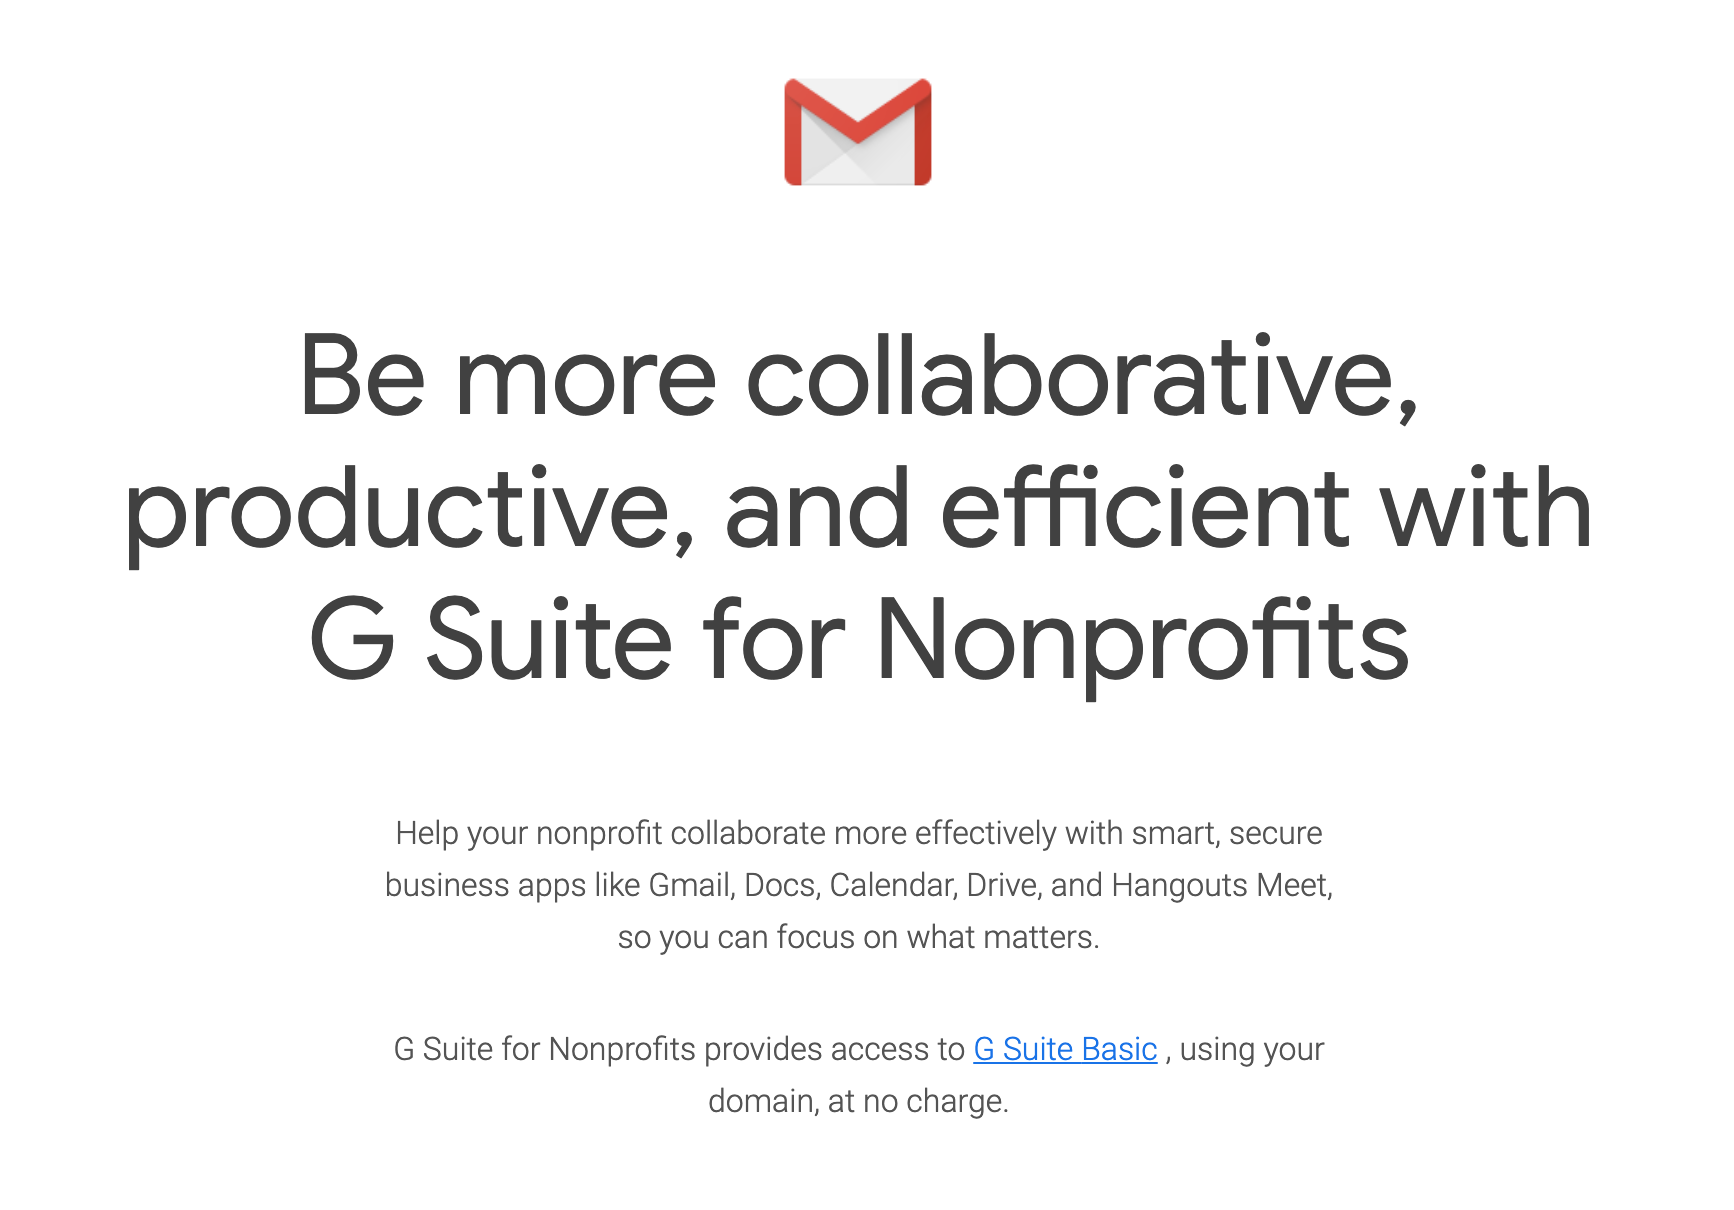 G Suite for Nonprofits